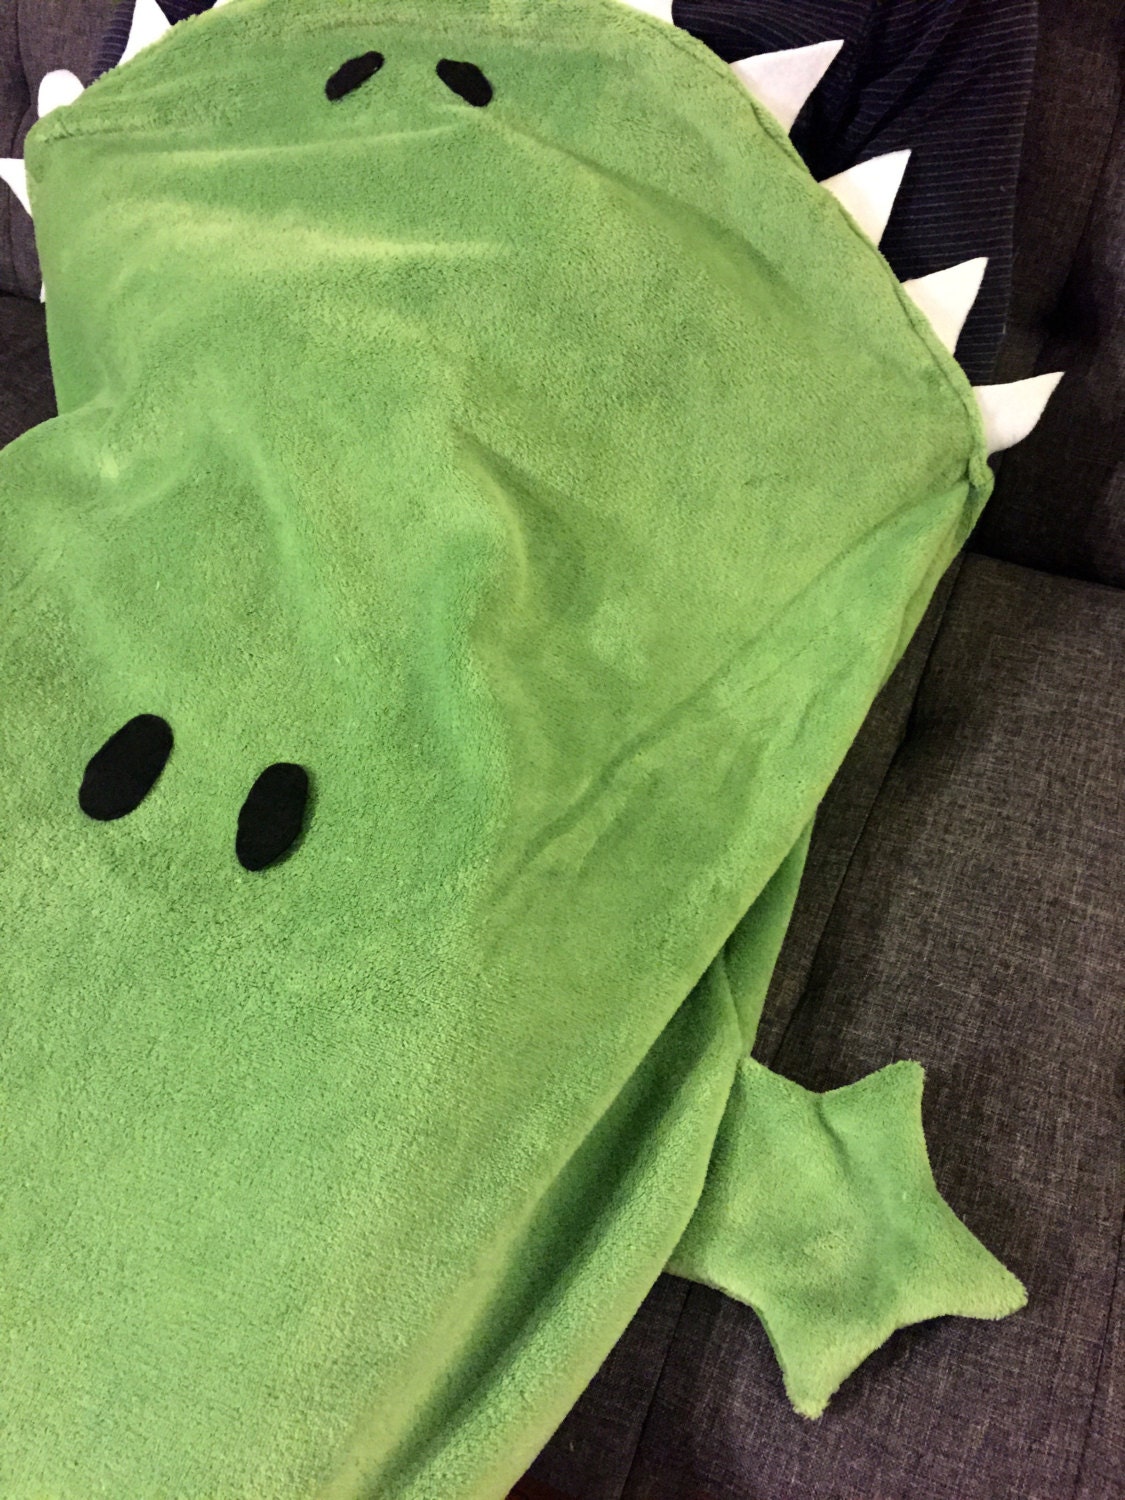 Blanket Alligator Bite Adult / Child Green Minky Fuzzy Tail - Etsy